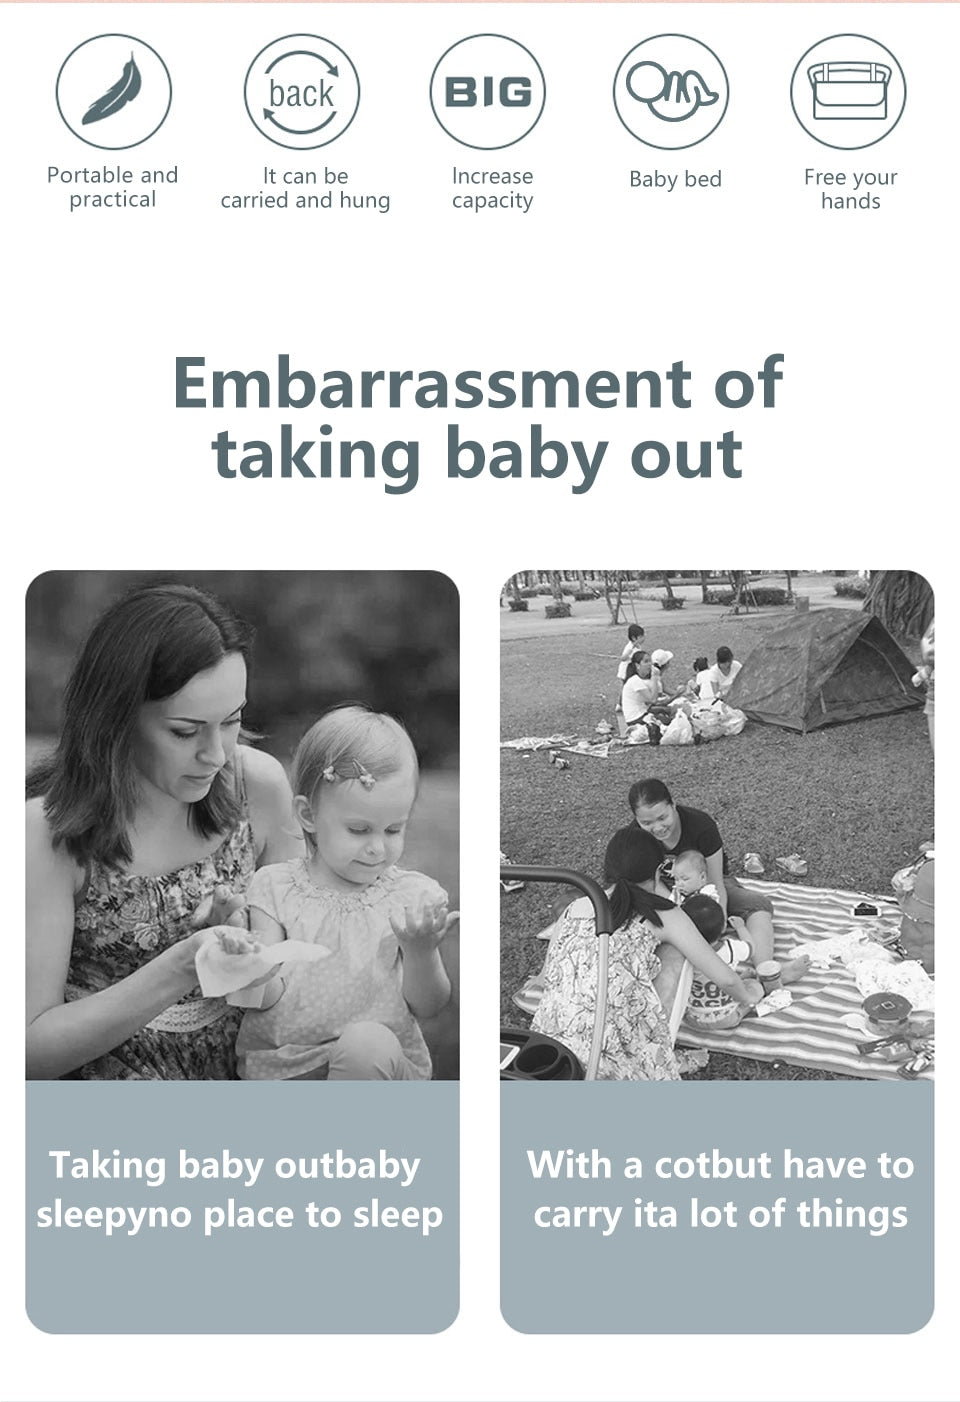 תיק הורים רב-תכליתי תינוקות